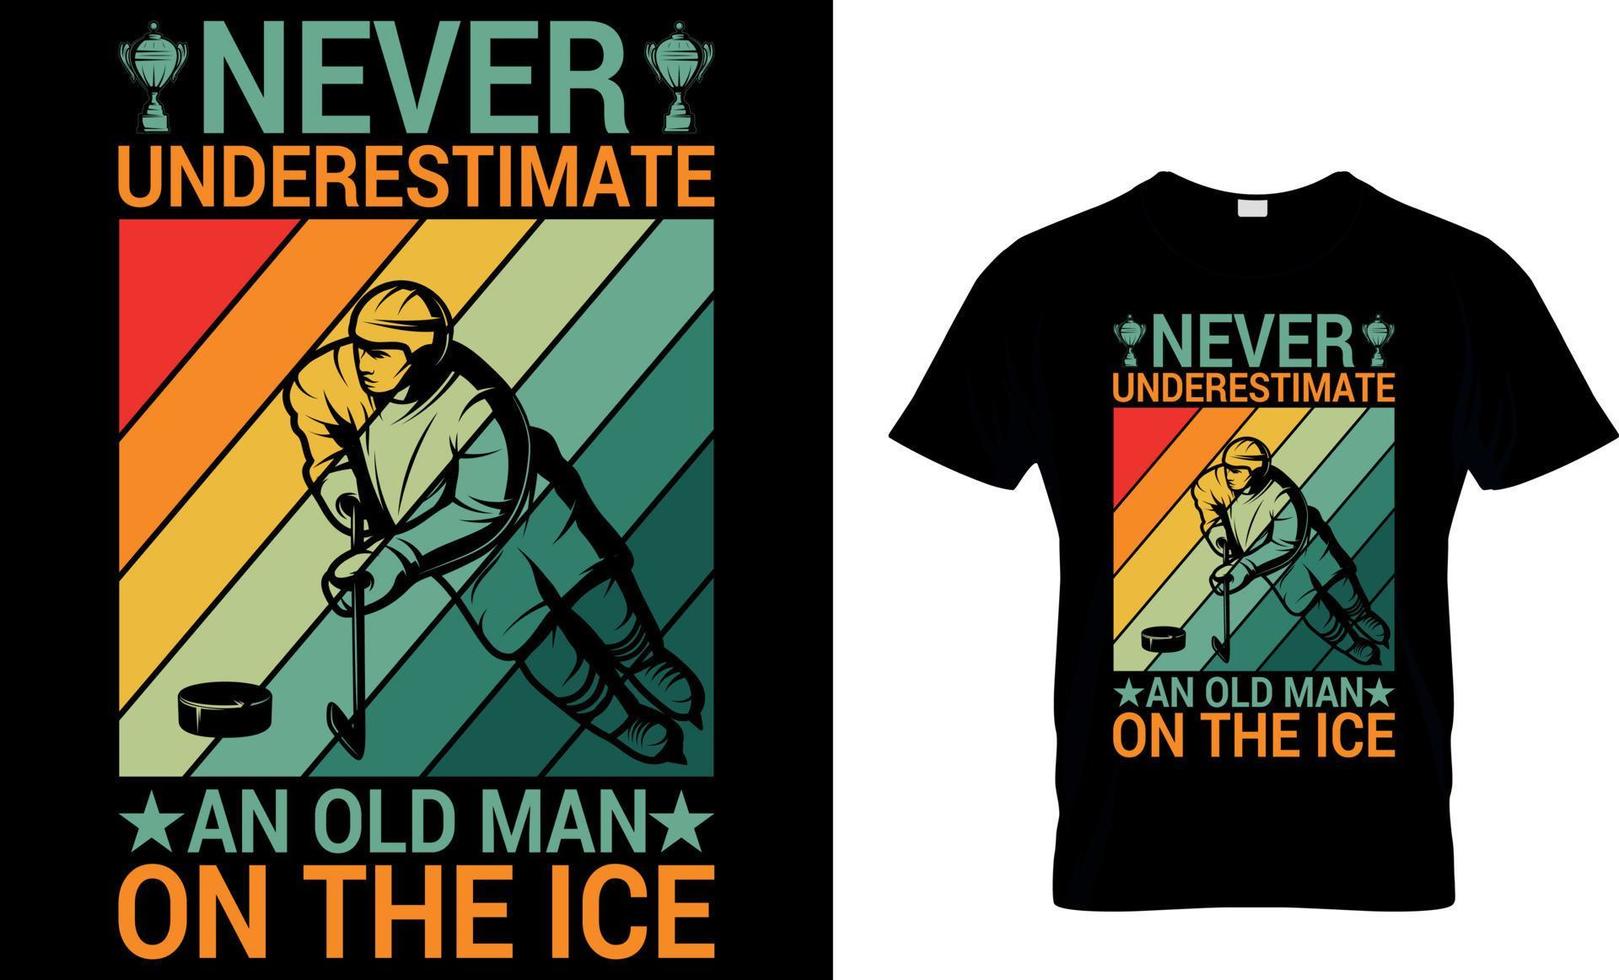 Eishockey-T-Shirt-Design-Vektorgrafik. Unterschätze niemals einen alten Mann auf dem Eis. vektor